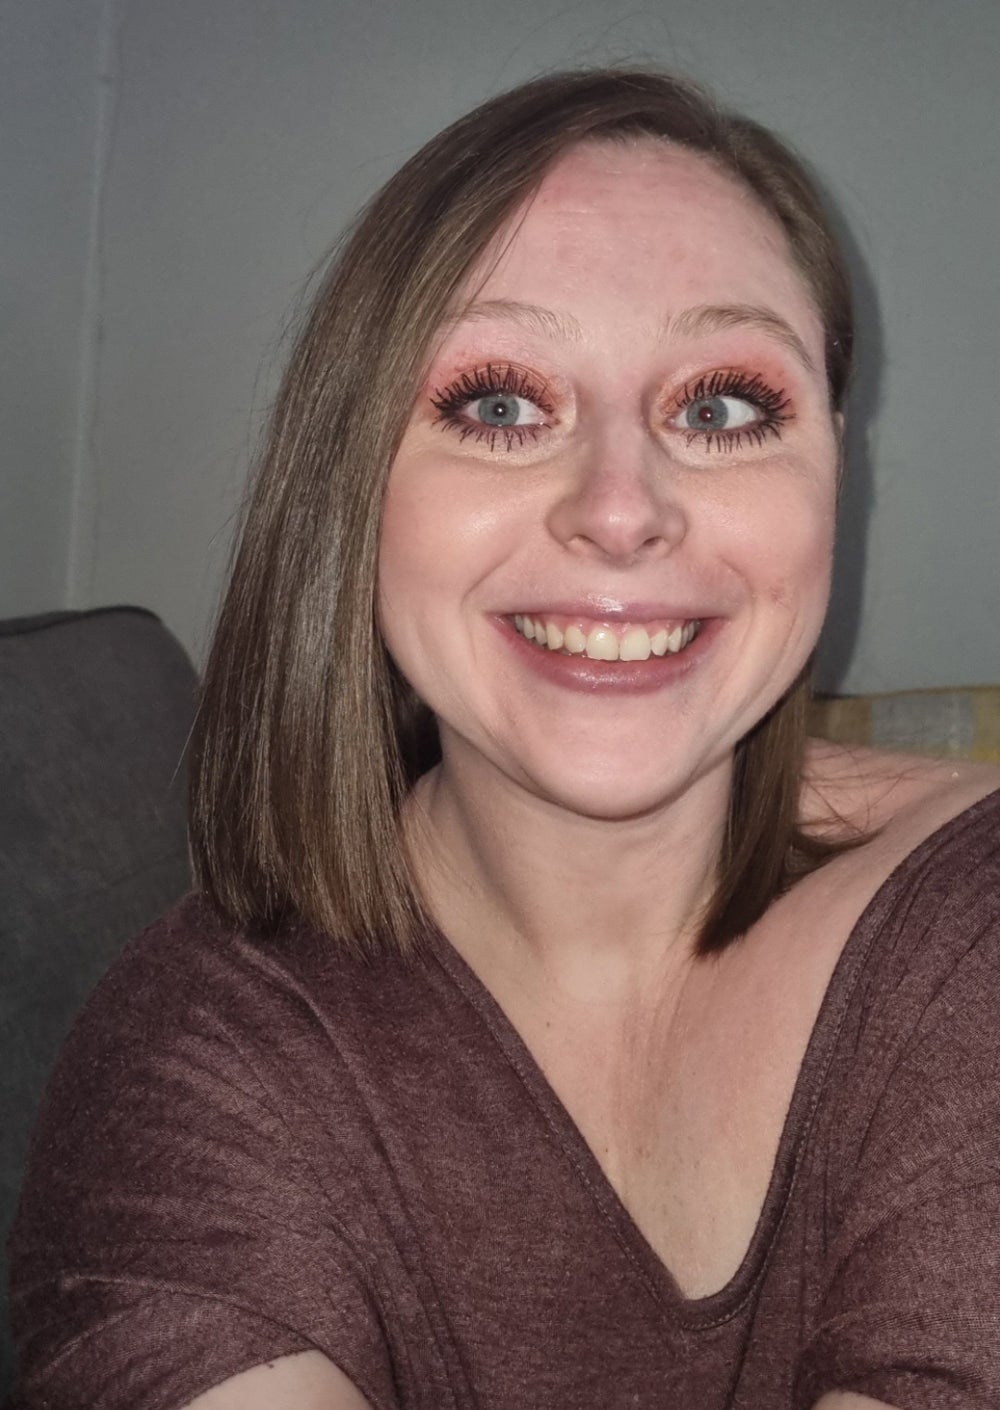 Kimberley Reardon (30 años) con maquillaje por primera vez desde hace años